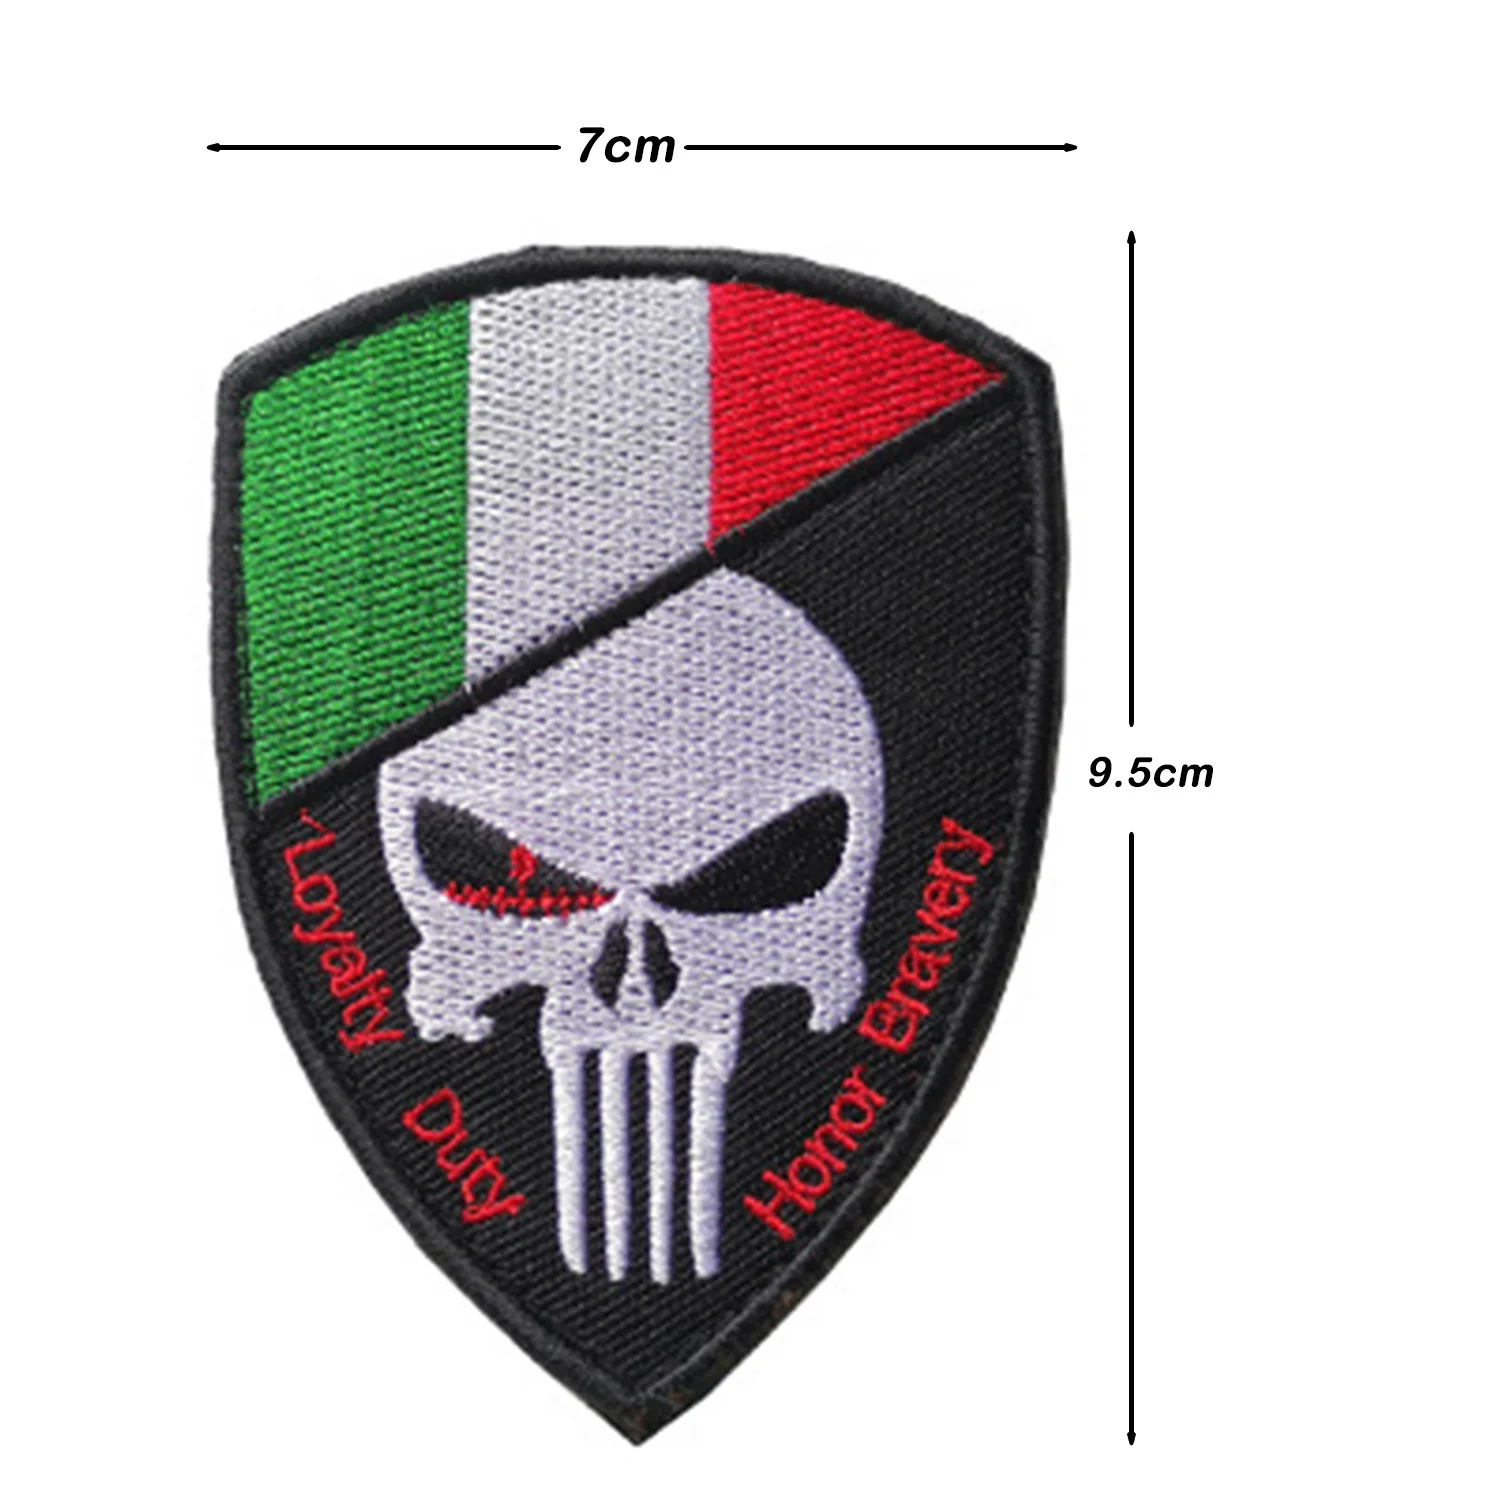 Итальянский итальянский карабинерский спецназ Группа действий ГИС десантник патч специальный Forze военный армейский полицейский патч значок